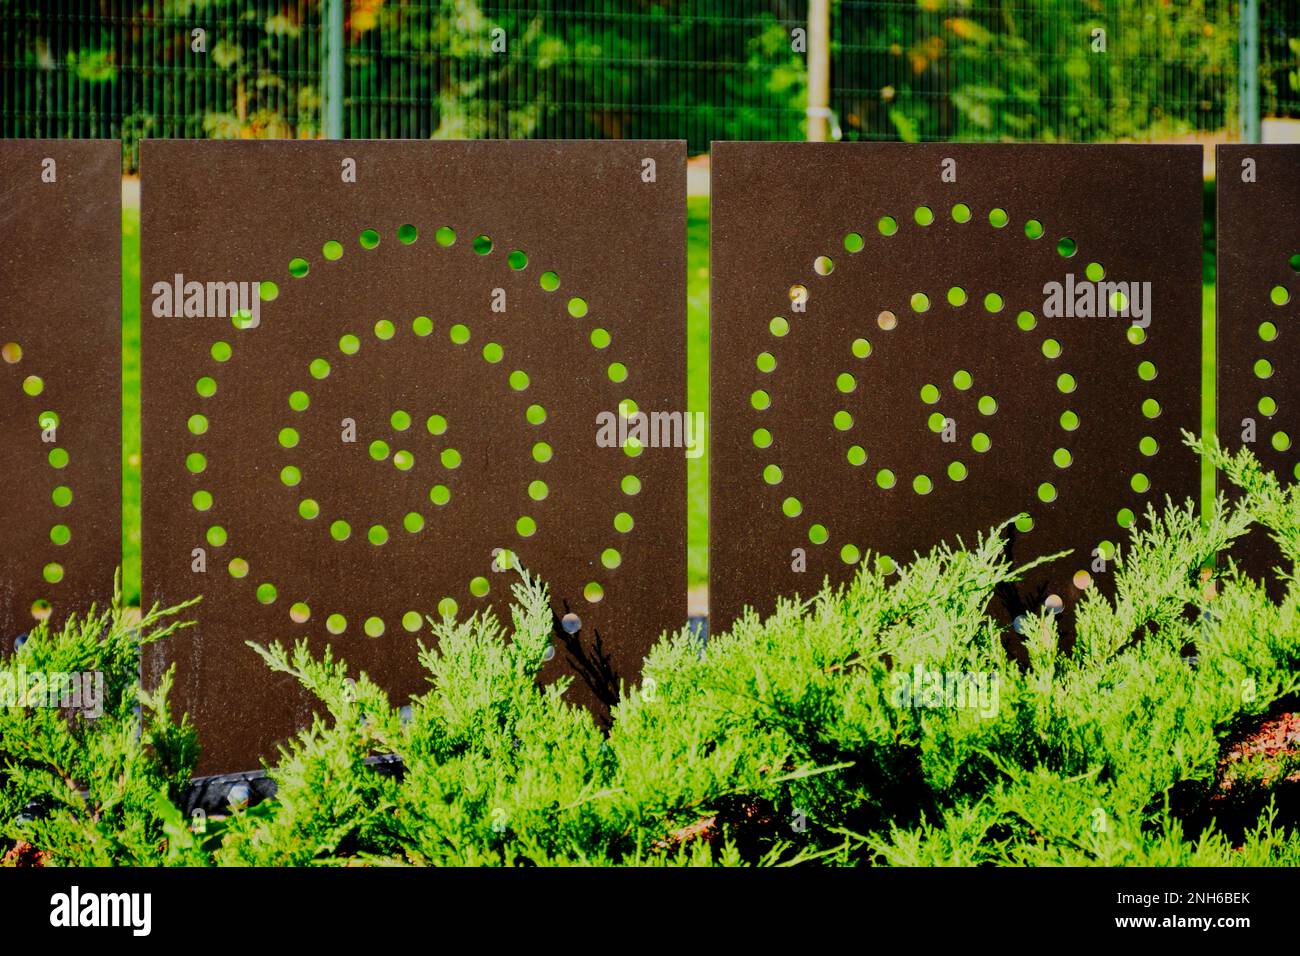 pannello recinzione in acciaio color ruggine con taglio laser decorativo. modello a spirale e lussureggiante arbusto di ginepro verde. fogliame denso. giardino sul marciapiede pubblico Foto Stock